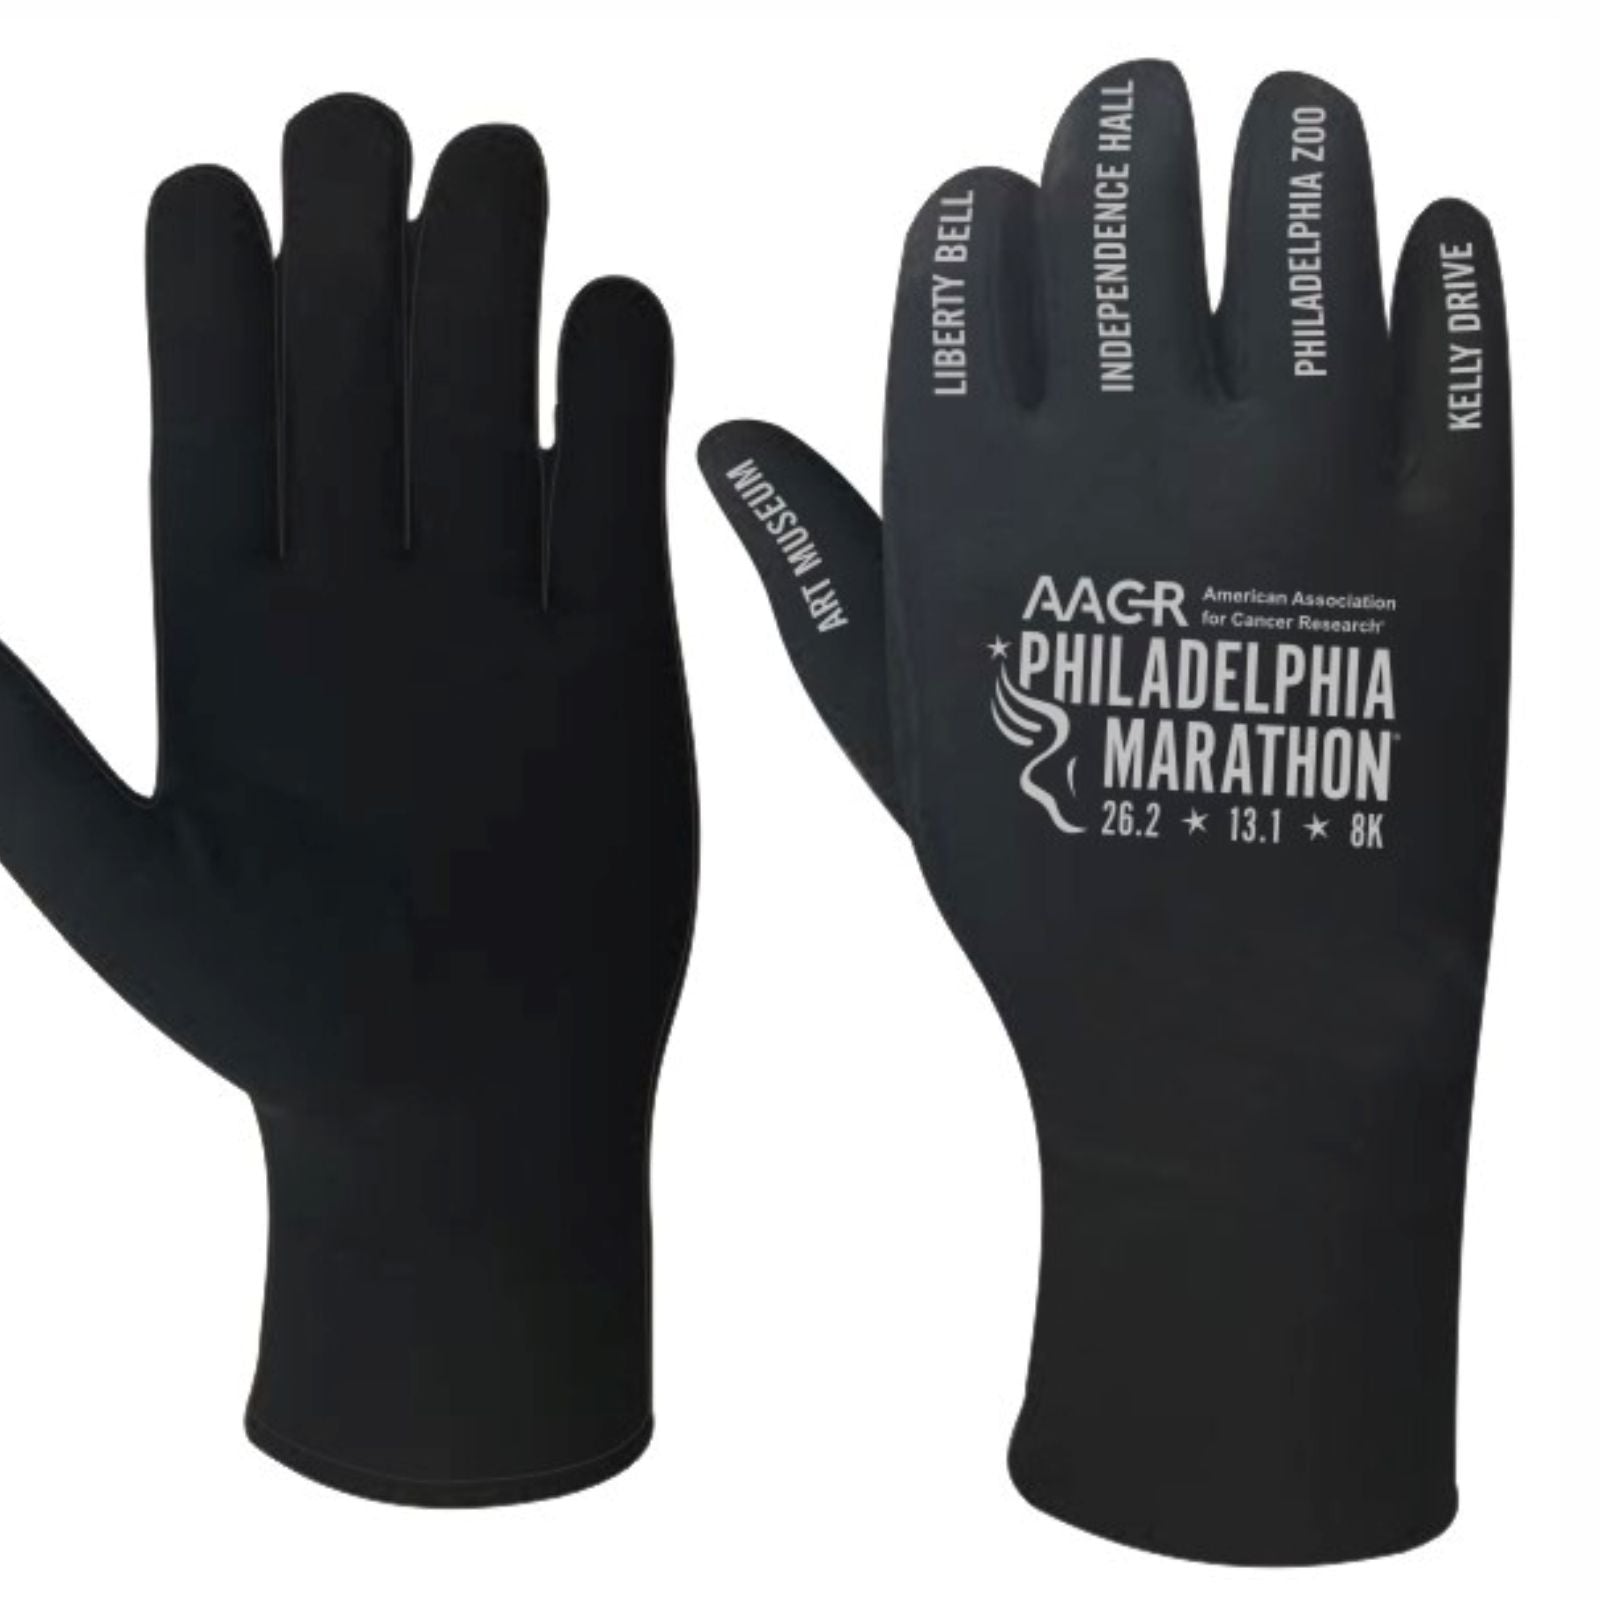 Gloves -Black Touchscreen- AACR Landmarks